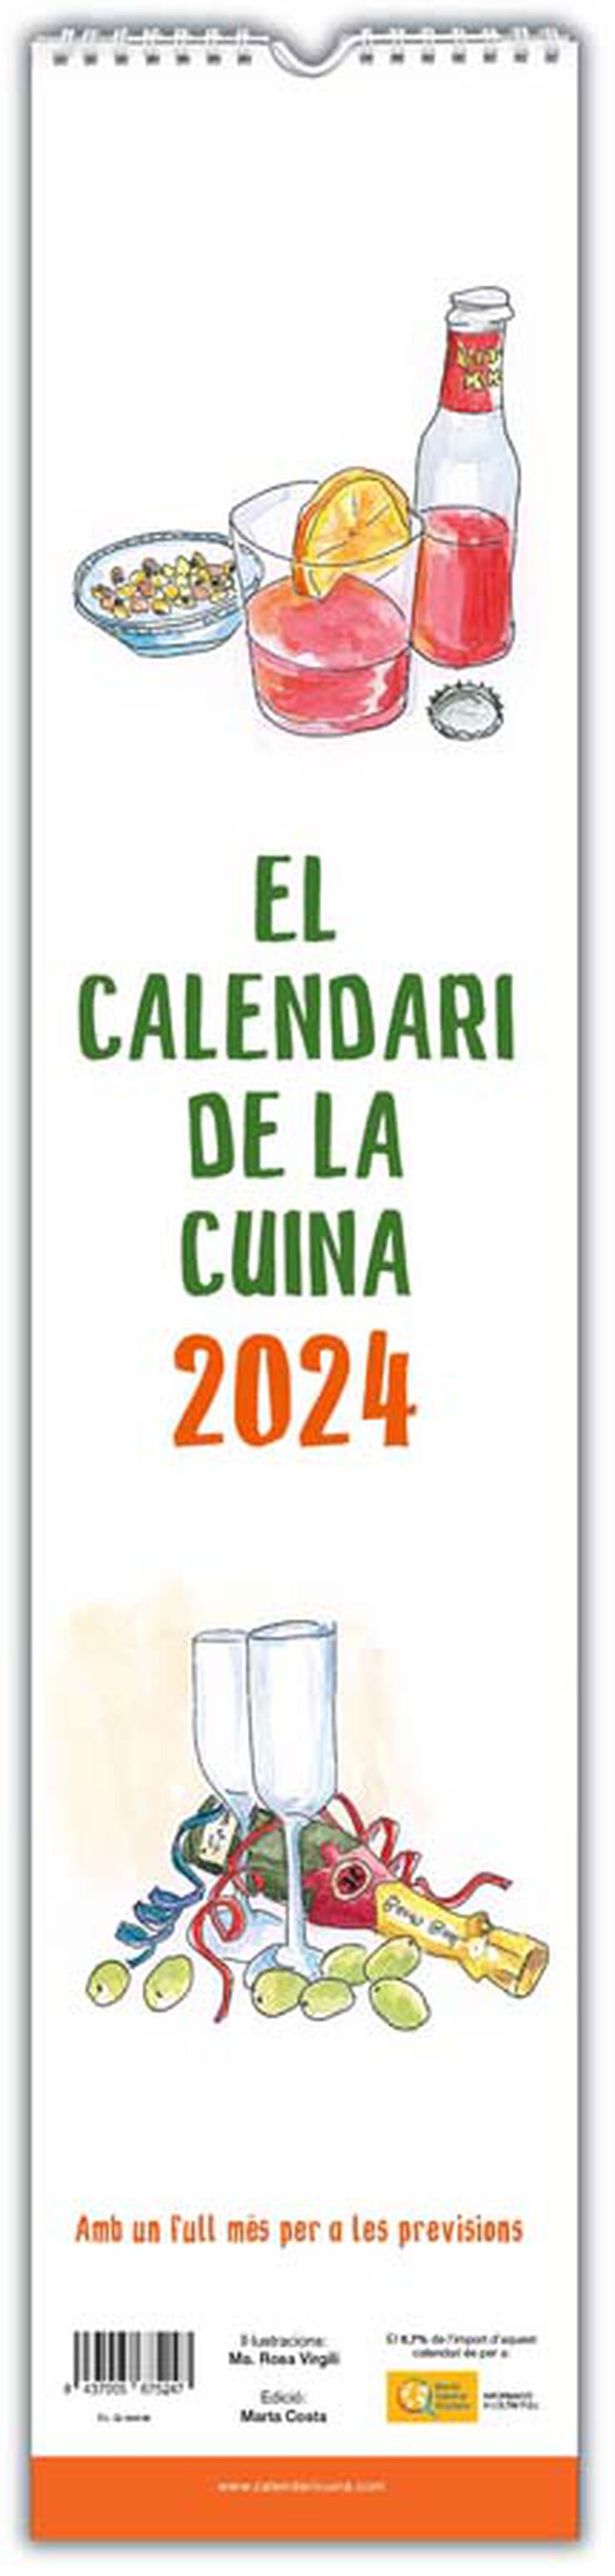 Calendario pared de la Cuina 2024 catalán